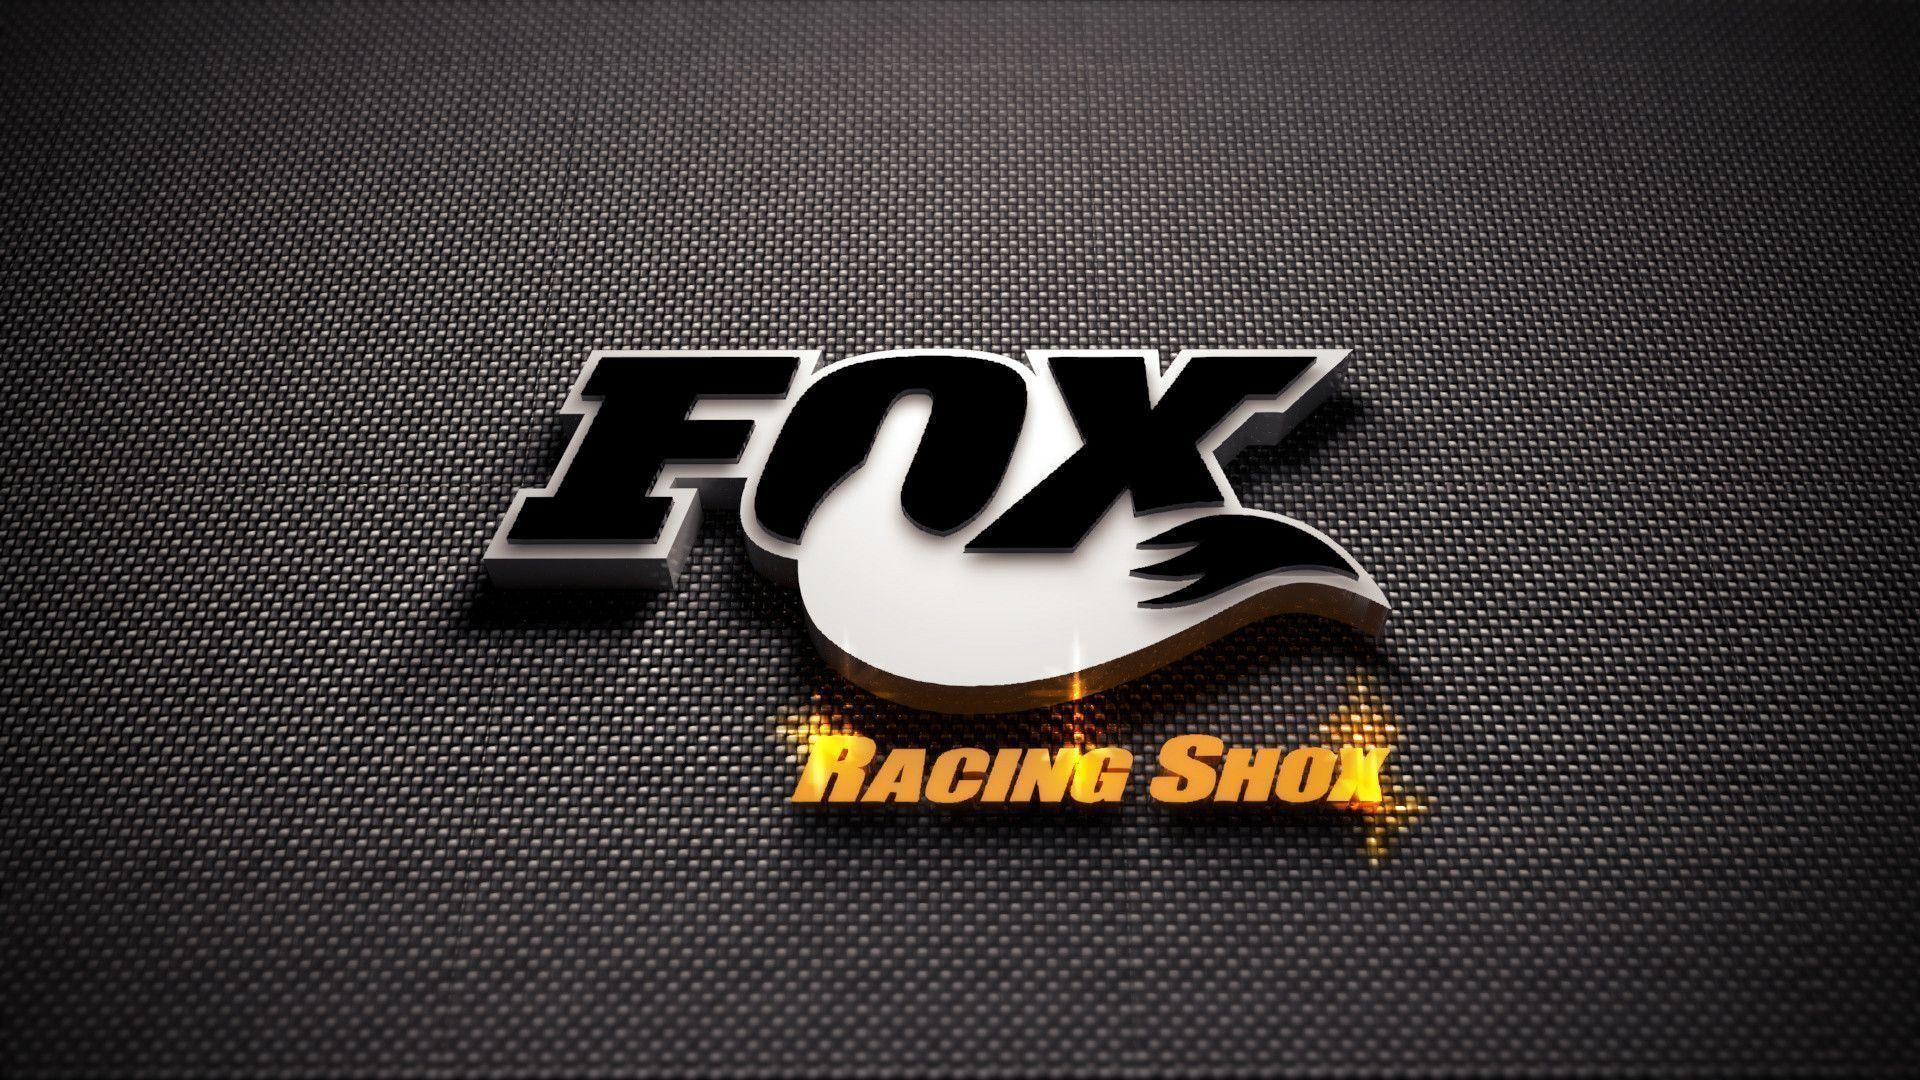 Original Fox Racing Wallpaper. Paravu.com